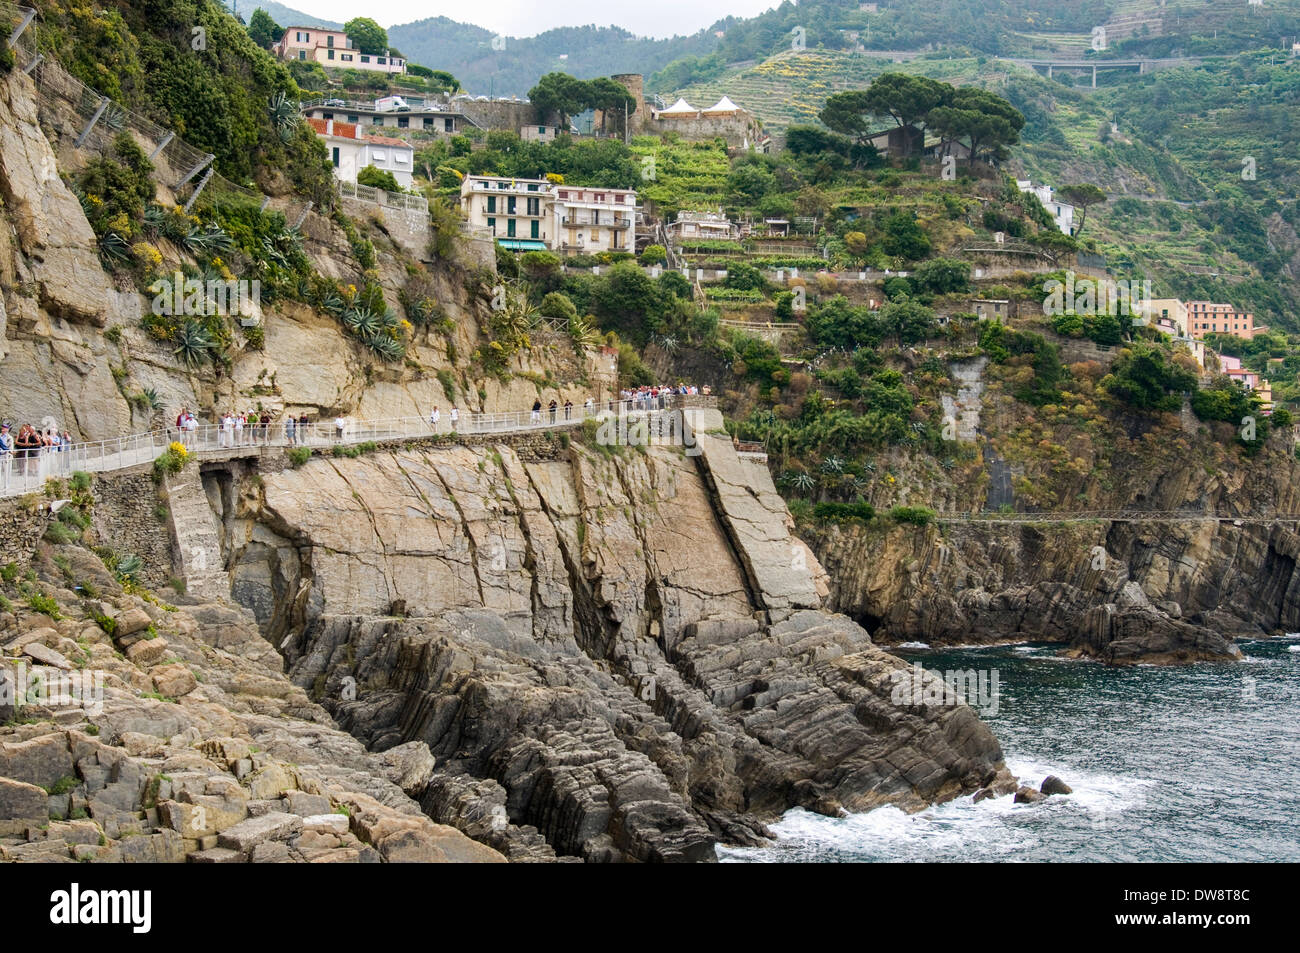 Tourists on the Sentiero Azzurro, Cinque Terre, Italy Stock Photo